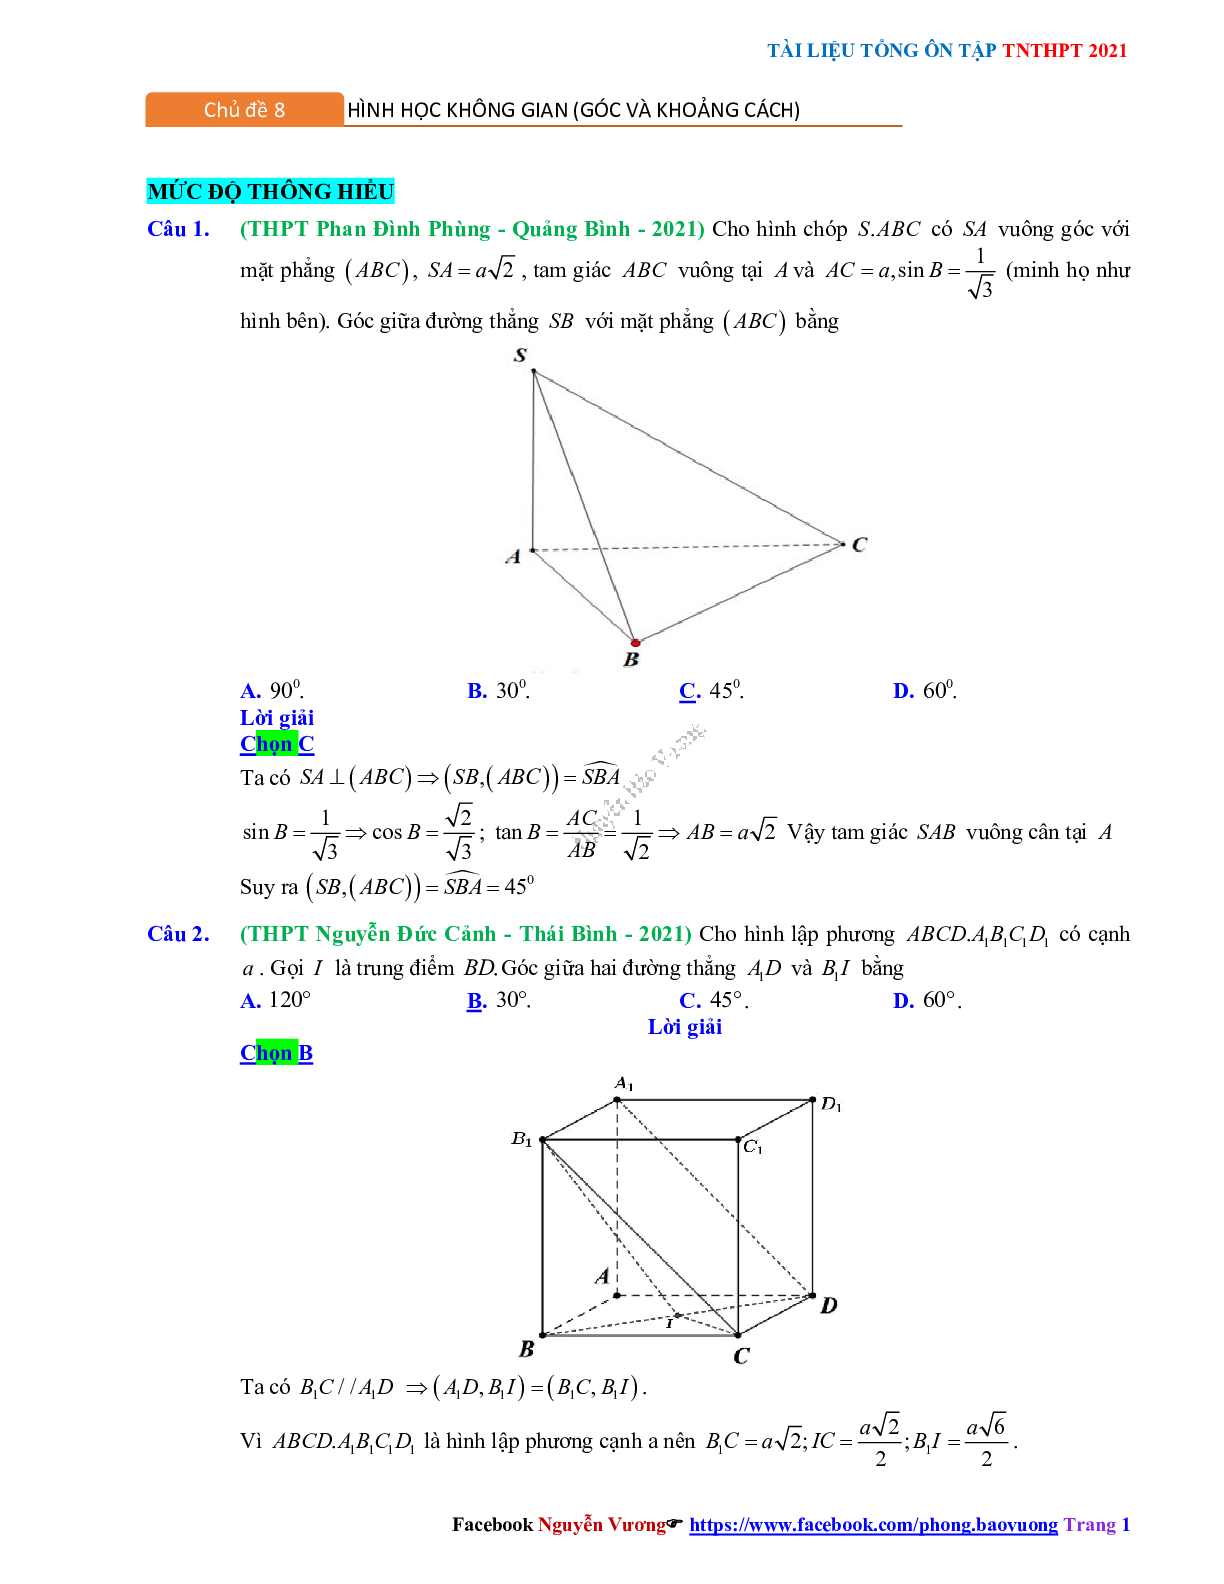 Trắc nghiệm Ôn thi THPT QG Toán 12: Đáp án hình học không gian mức độ thông hiểu (trang 1)